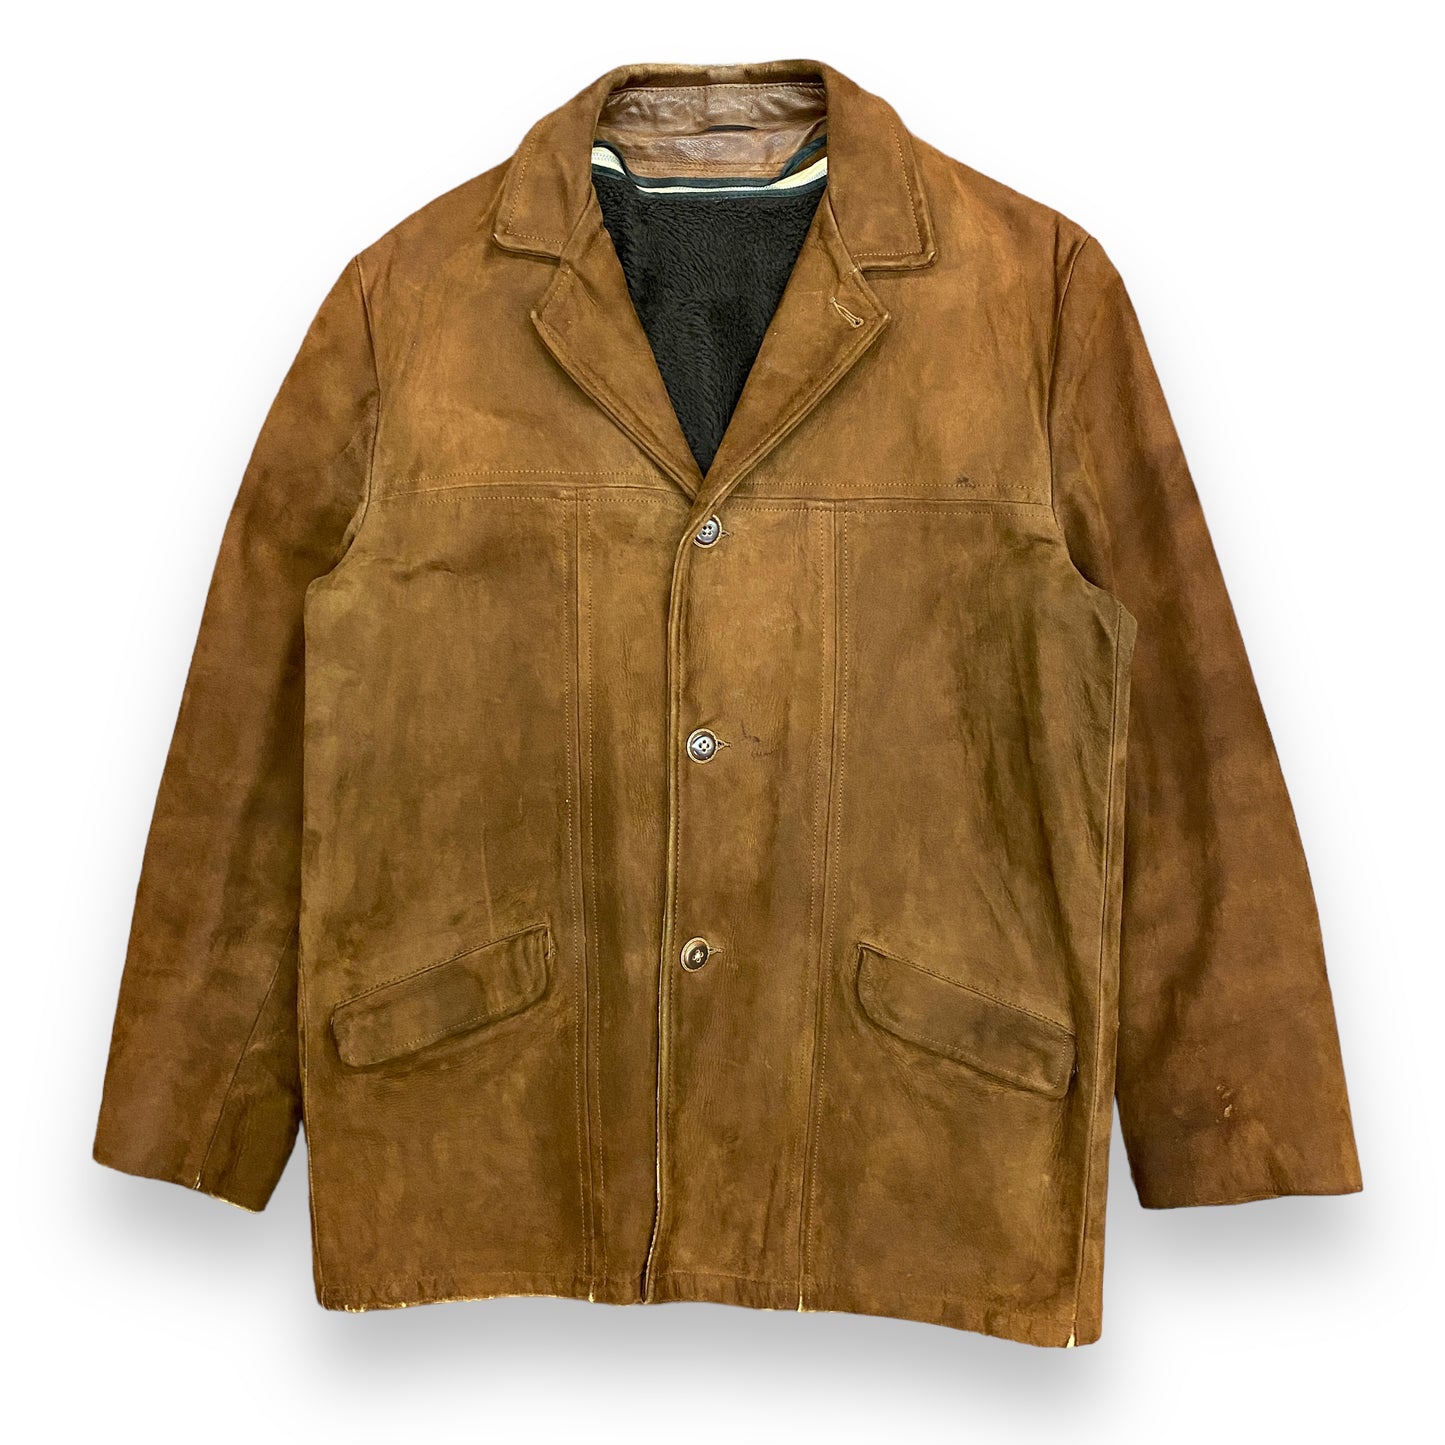 1970s William Barry Brown Suede Fleece Lined Coat - Size 40 (Medium)